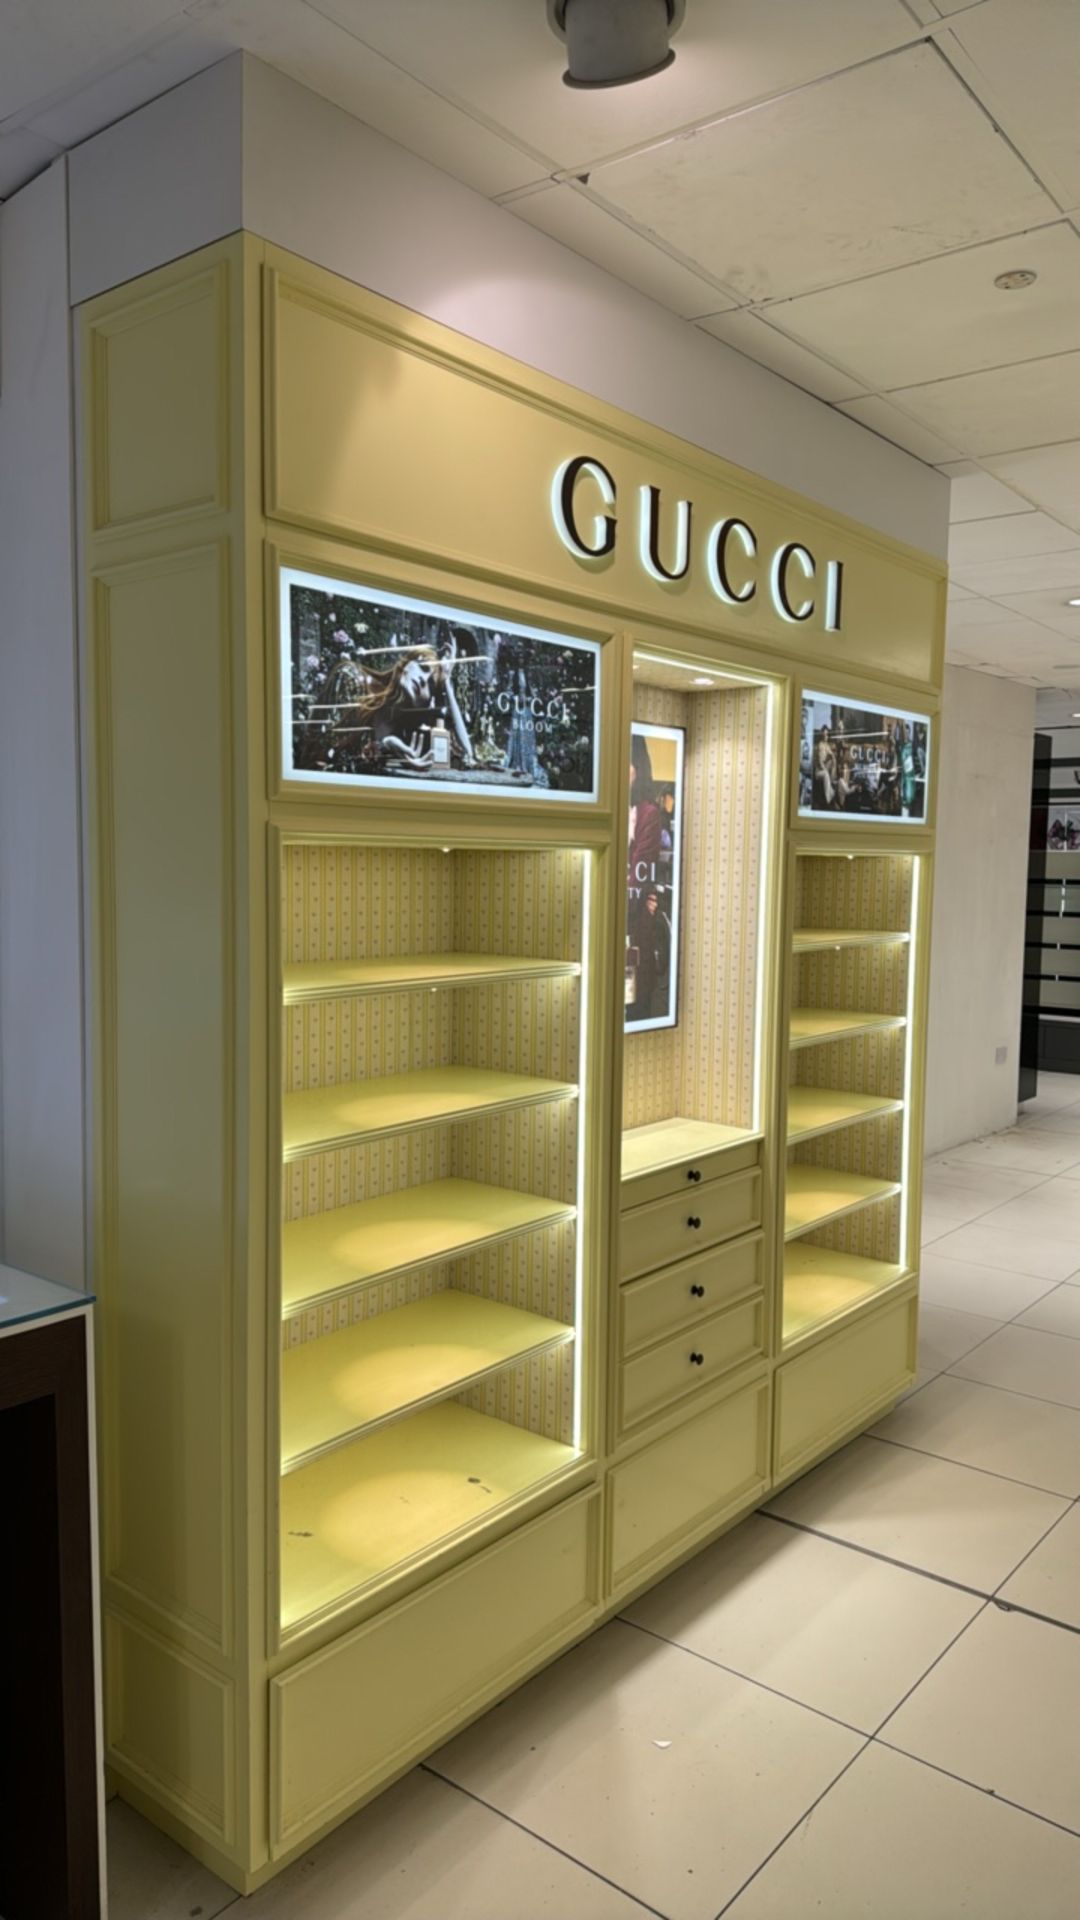 Gucci Wall Display - Image 8 of 8